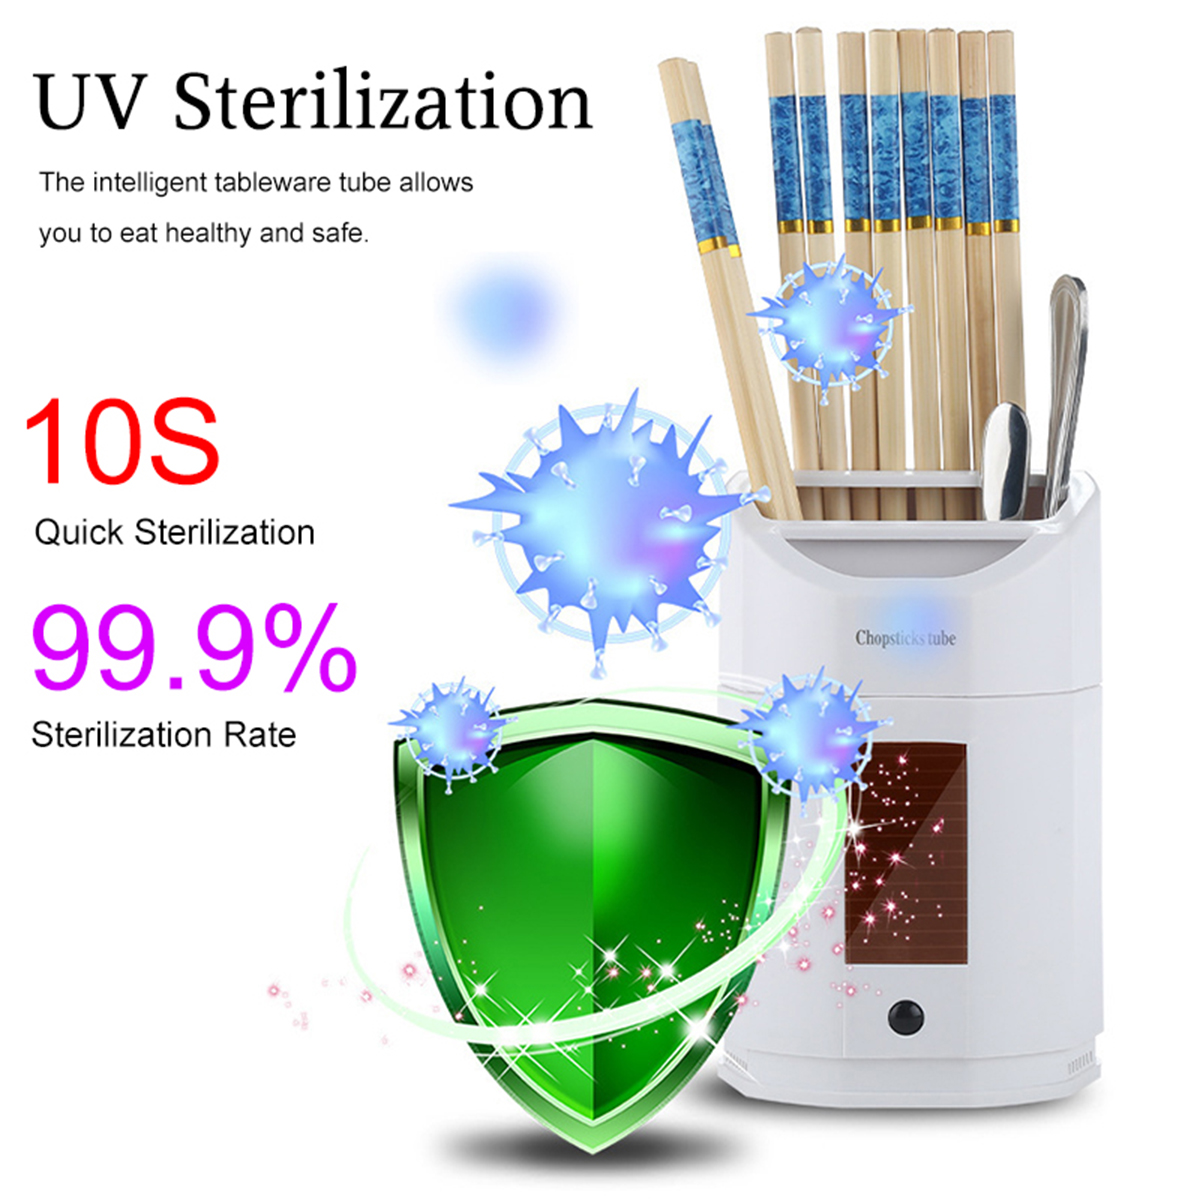 USB-UV-Smart-Disinfection-Steriliser-Fork-Spoon-Tableware-Holder-Kitchen-Tool-1702912-4